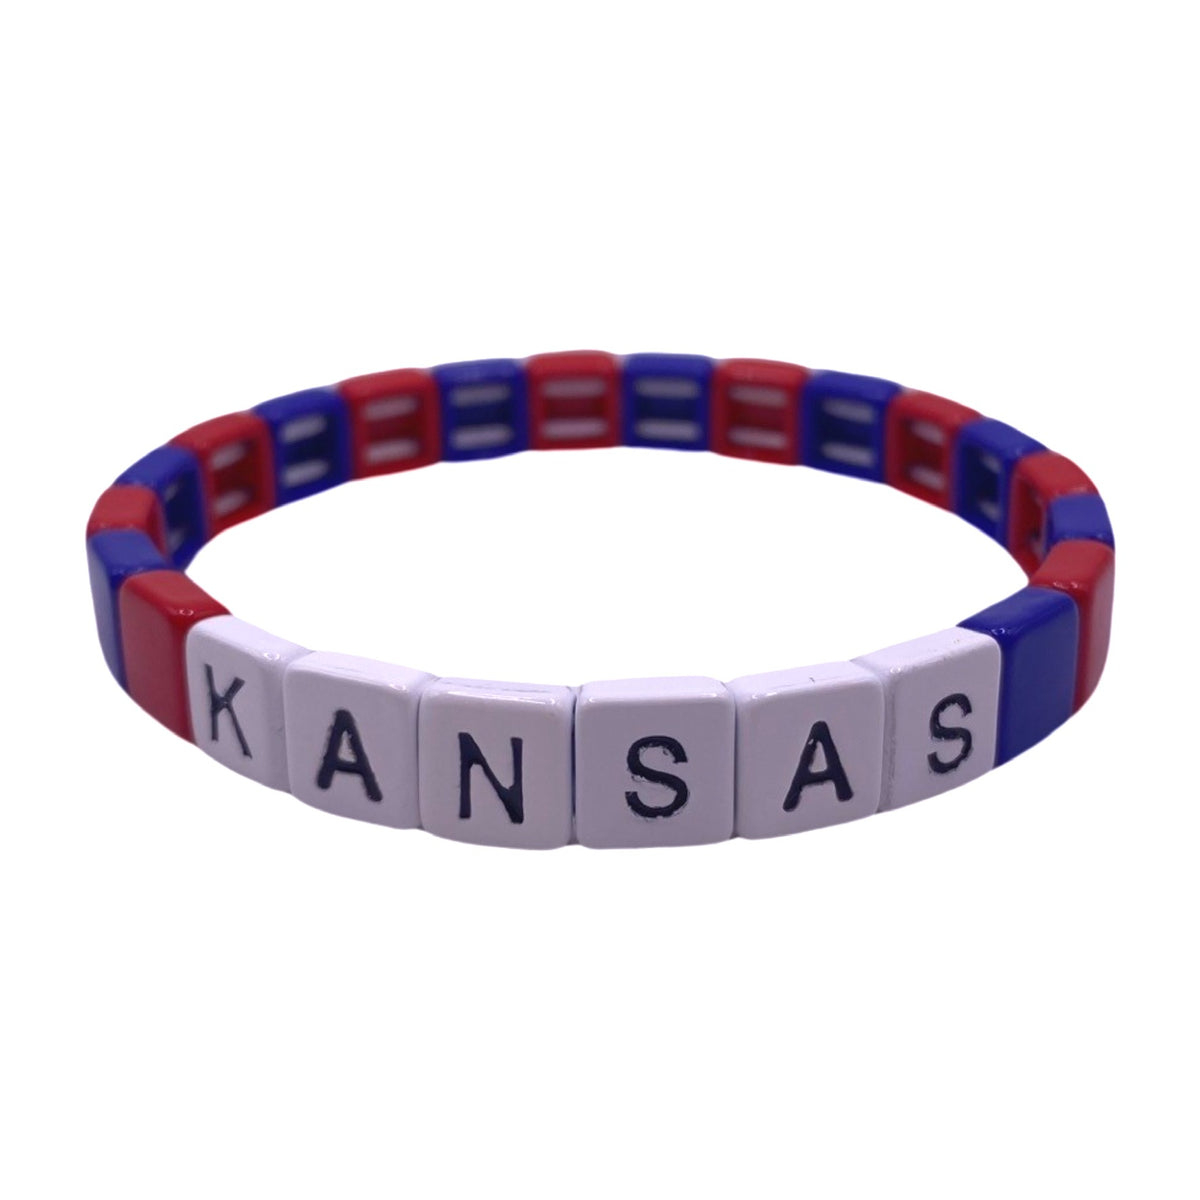 Kansas Jayhawks - KU Needle Point Bracelet – The Preppy Desk LLC